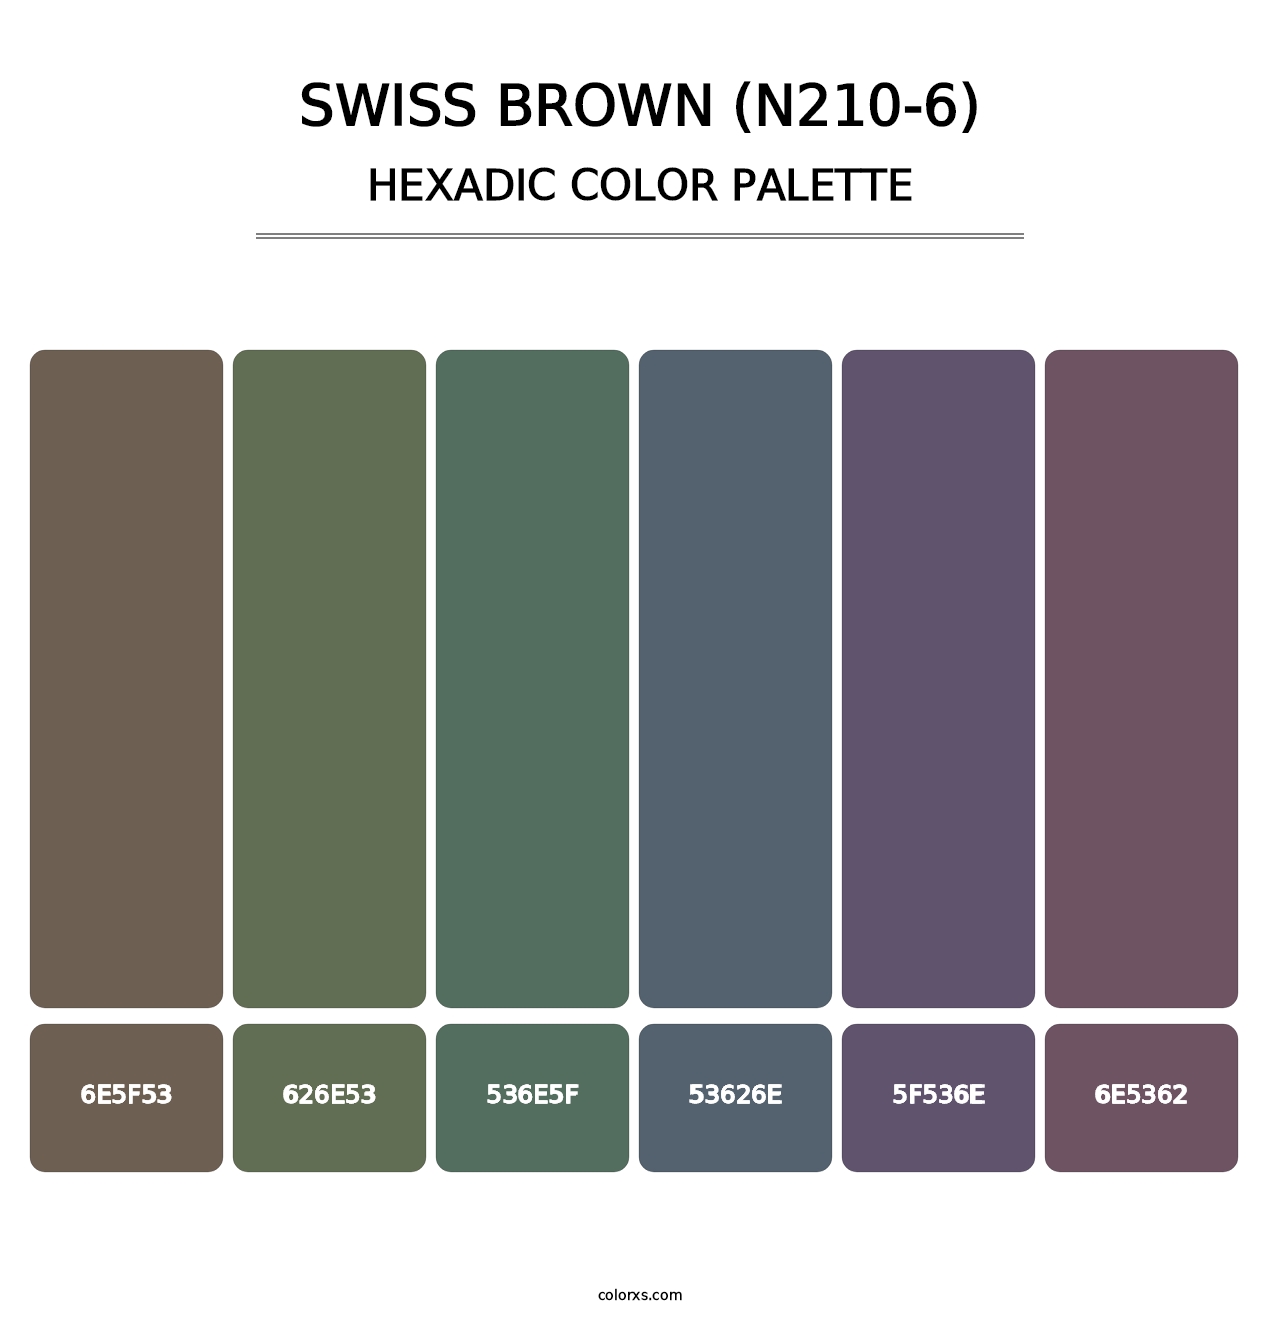 Swiss Brown (N210-6) - Hexadic Color Palette